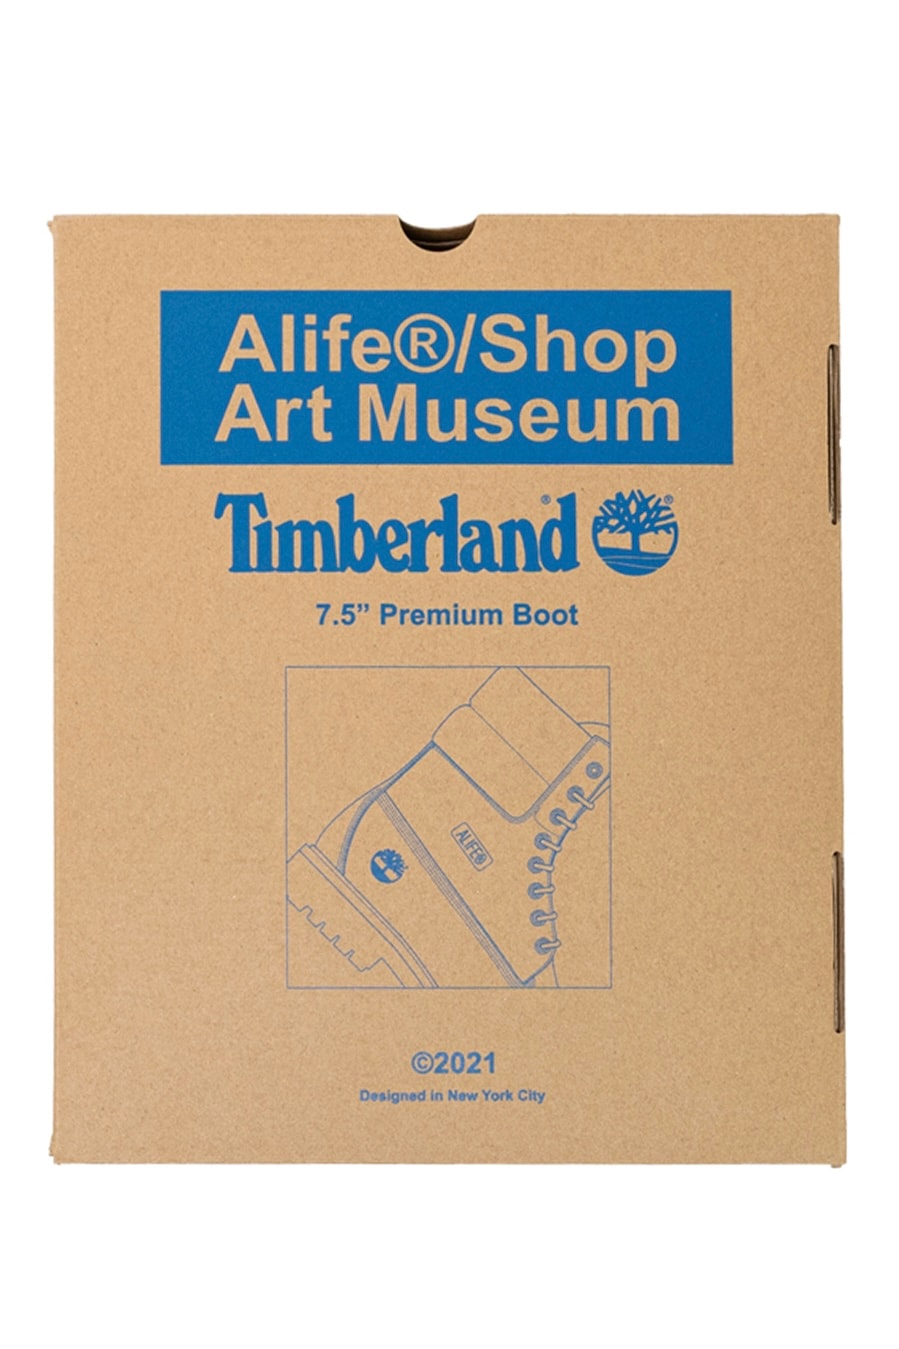 Timberland x Alife 全新联名系列将于 THE DROP 限定发售